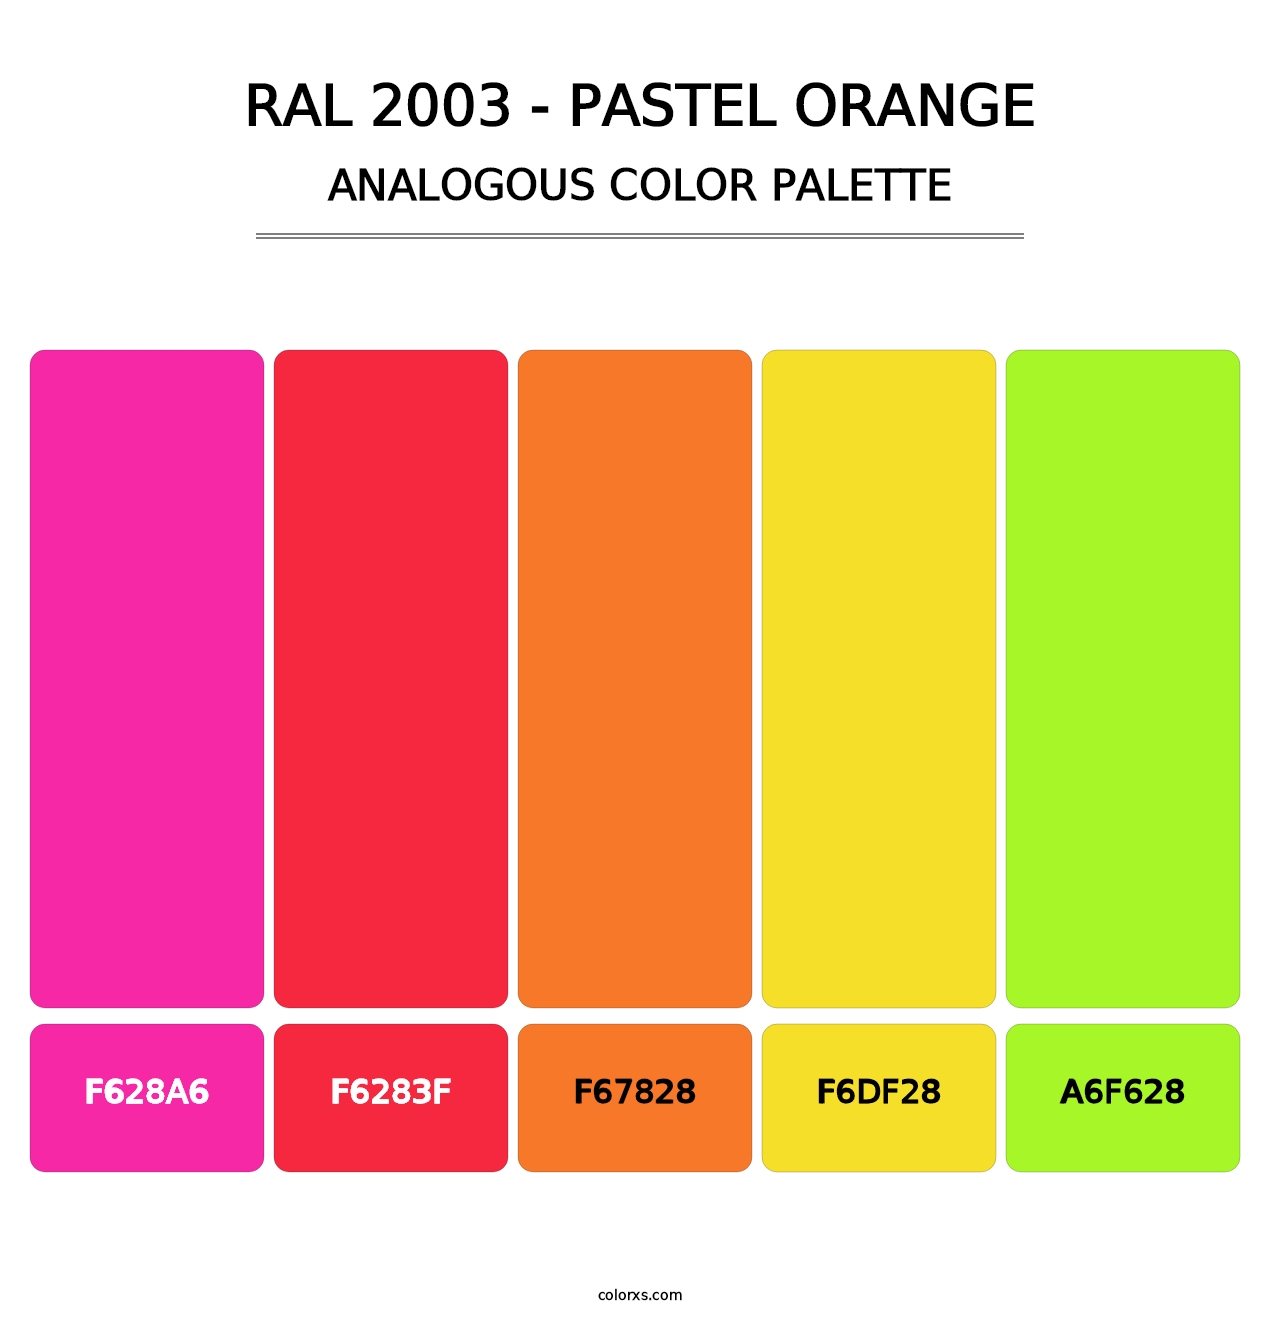 RAL 2003 - Pastel Orange - Analogous Color Palette